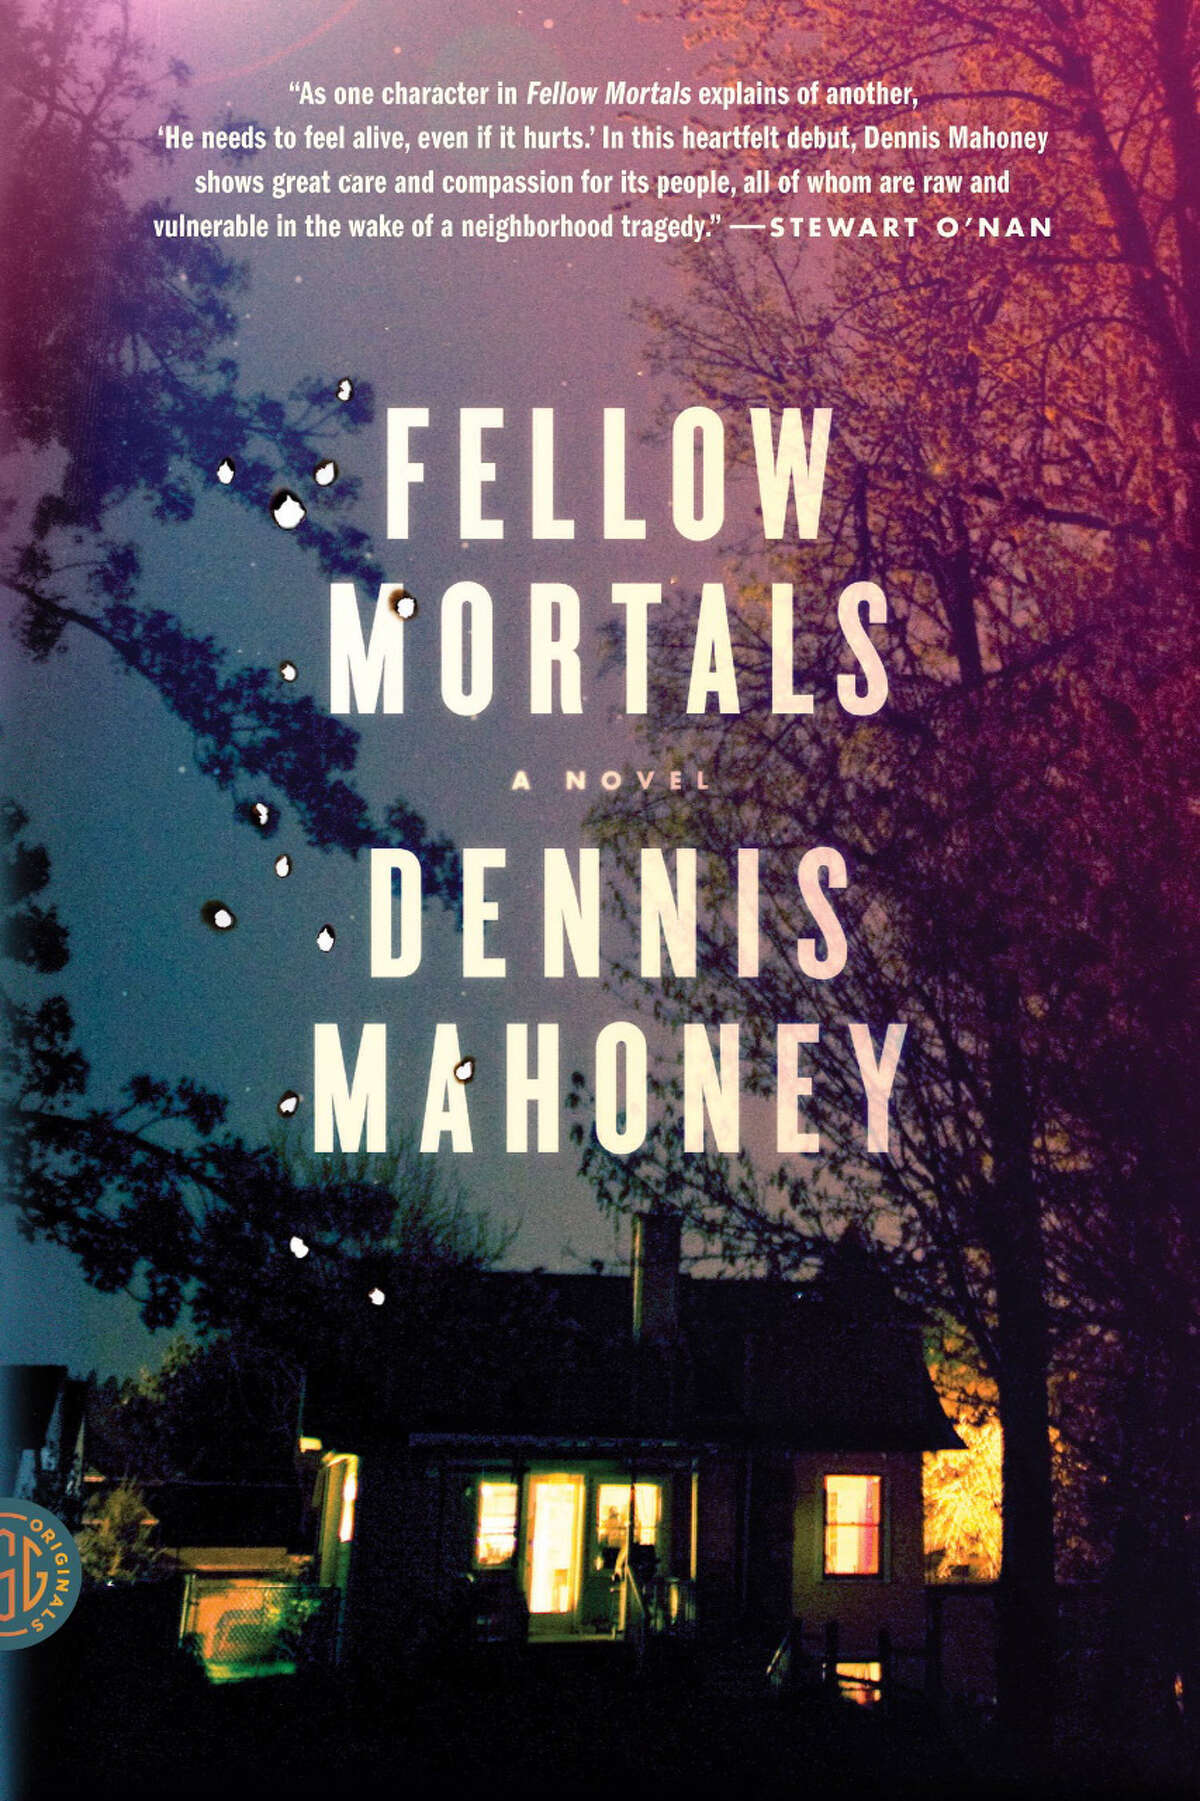 "Fellow Mortals" by Dennis Mahoney